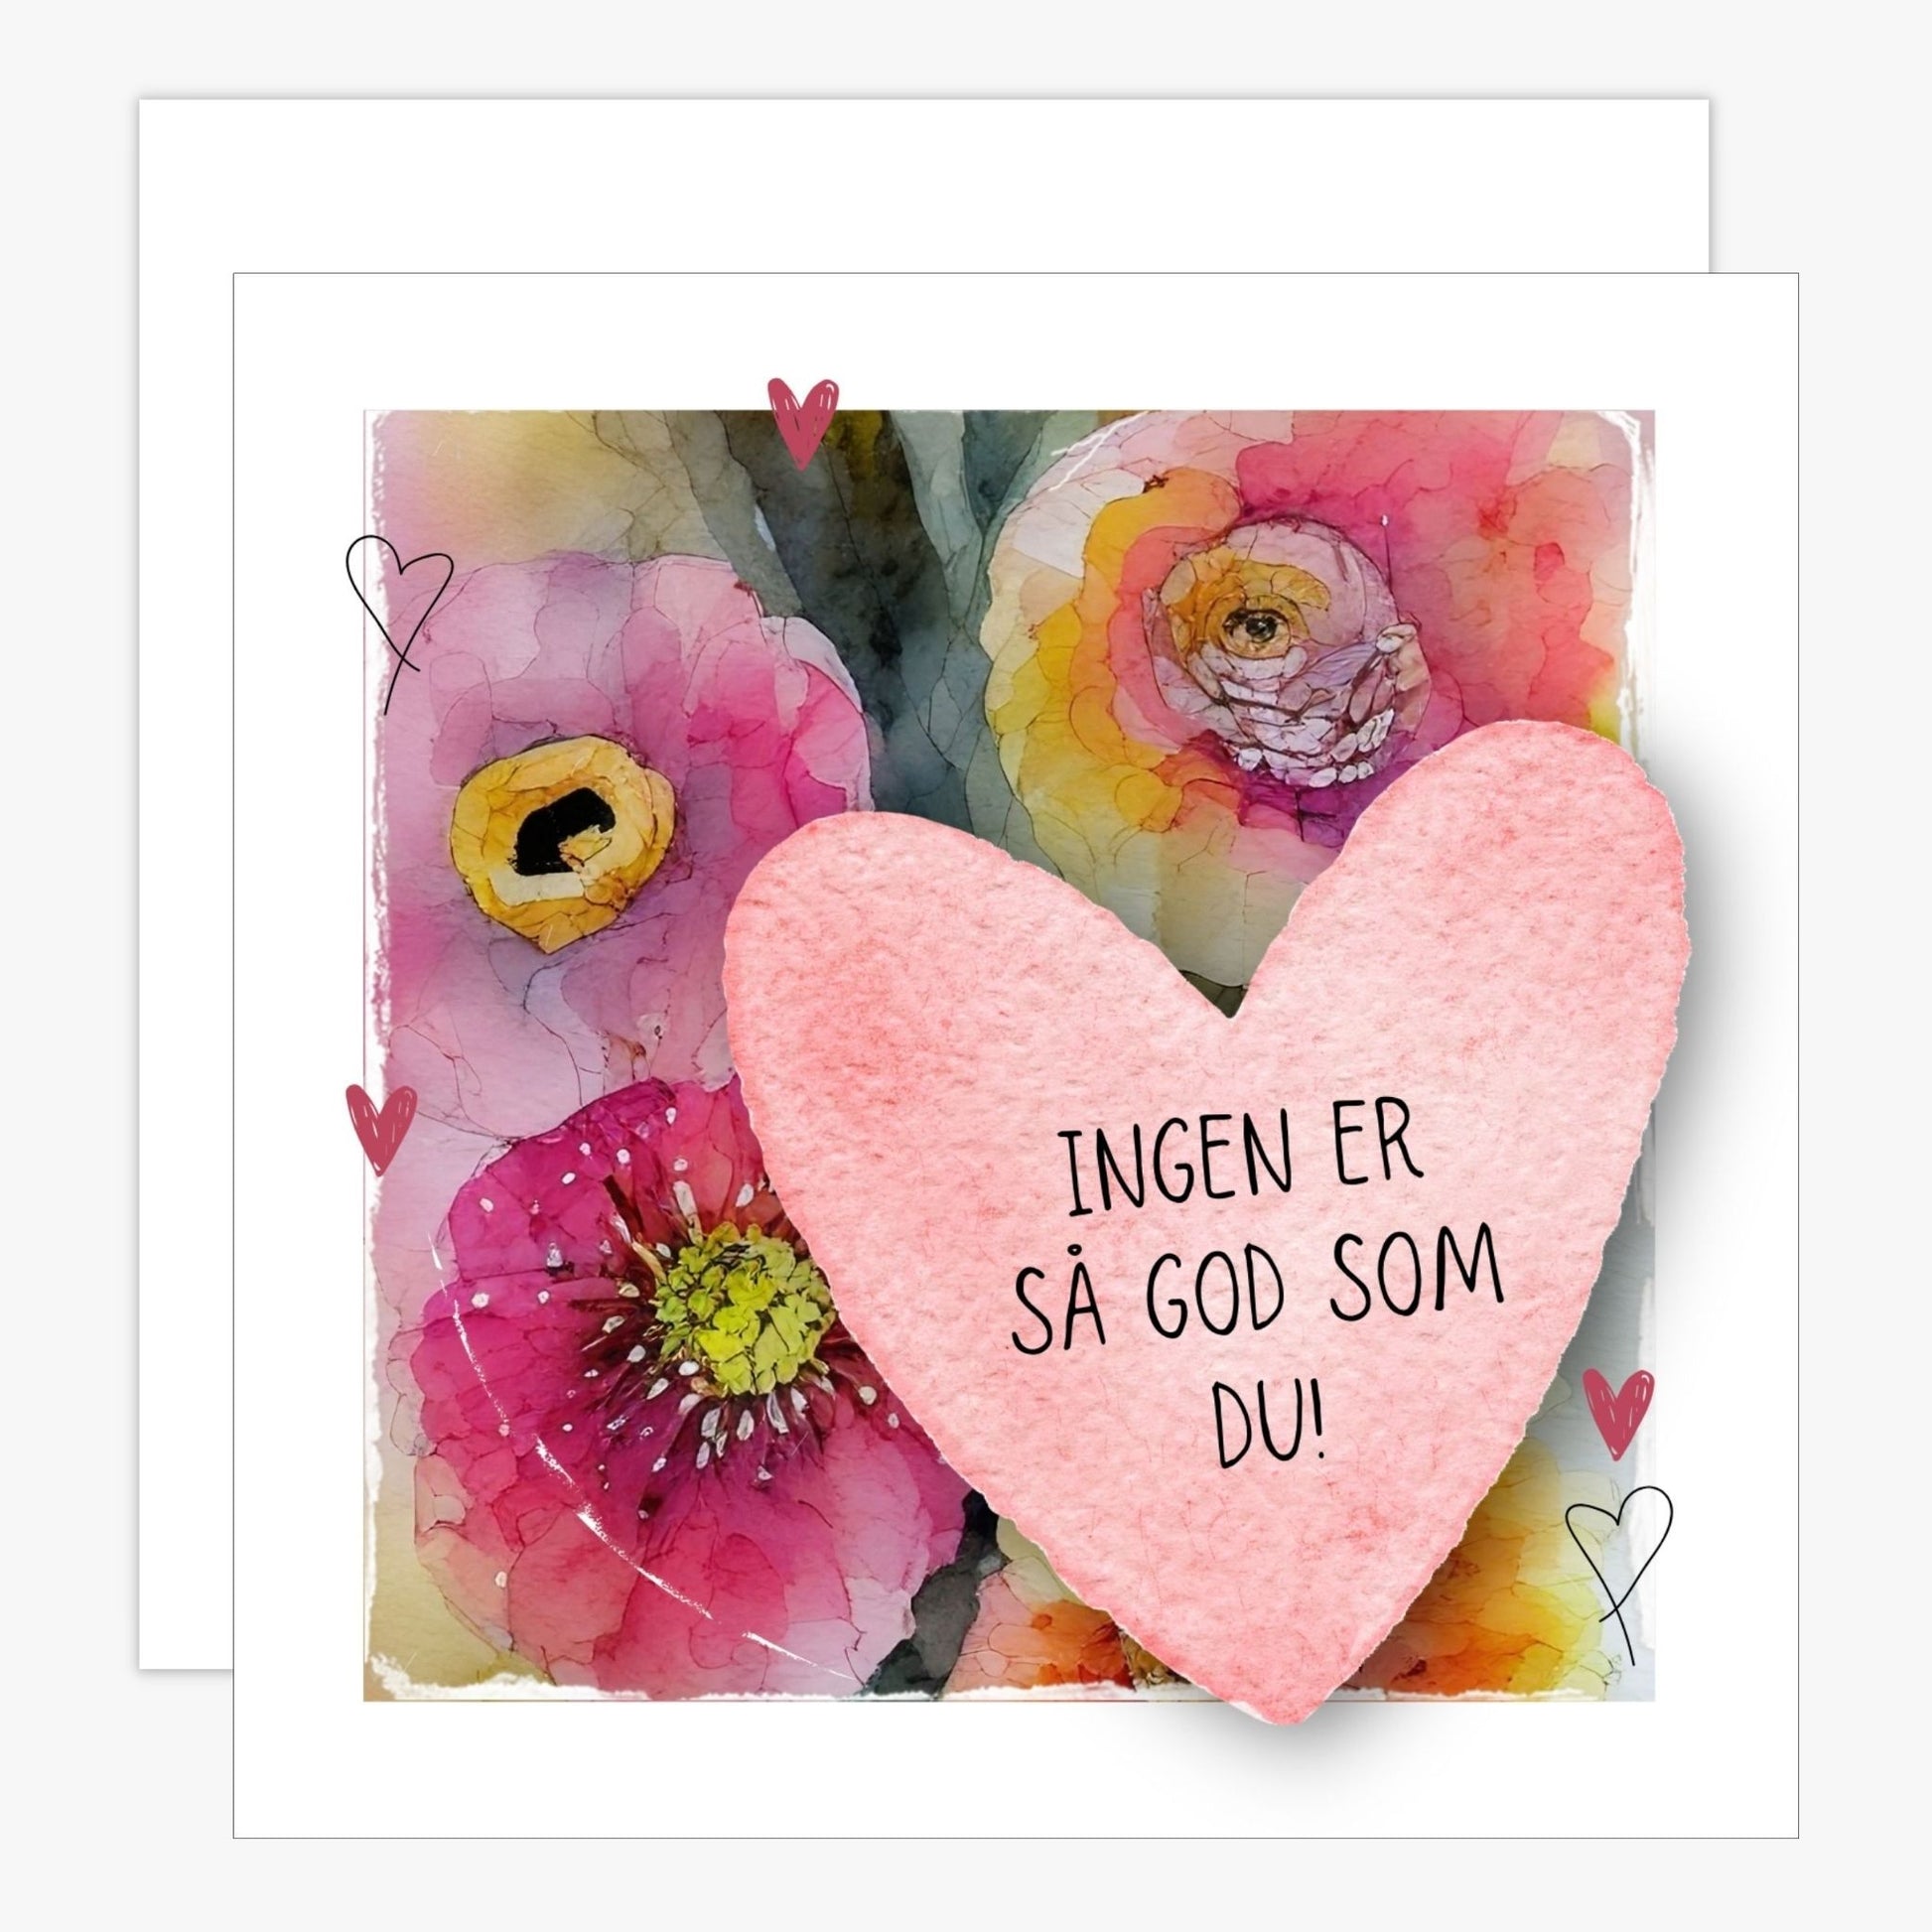 Grafisk kort med et rosa hjerte påført tekst "Ingen er så god som du!". Bagrunn i cerise og guloransje blomster. Konvolutt er inkludert.